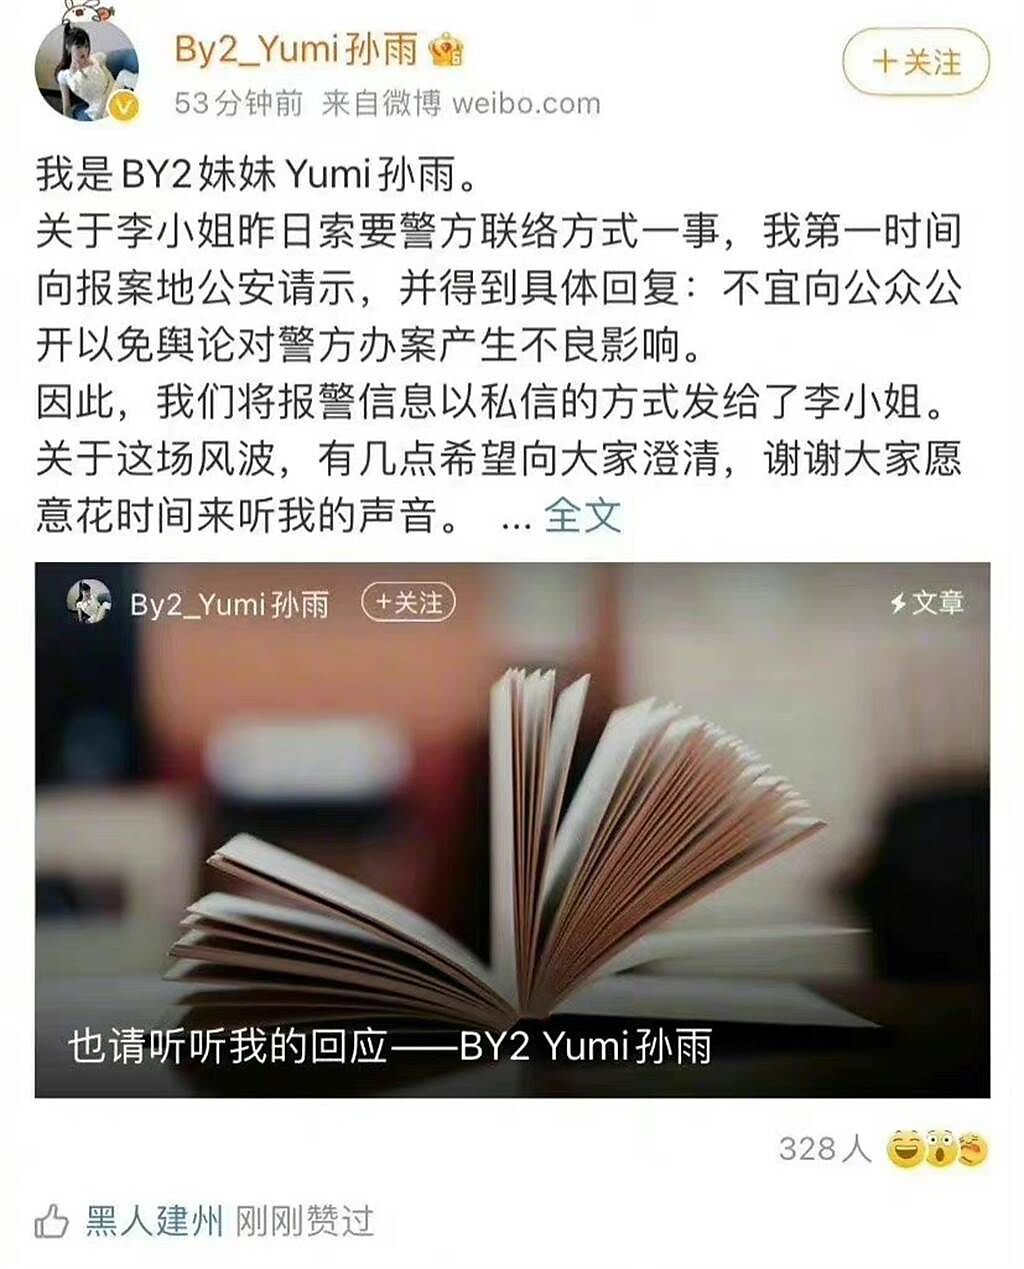 「黑人陳建州點讚Yumi長文」登上熱搜。(翻攝自微博)